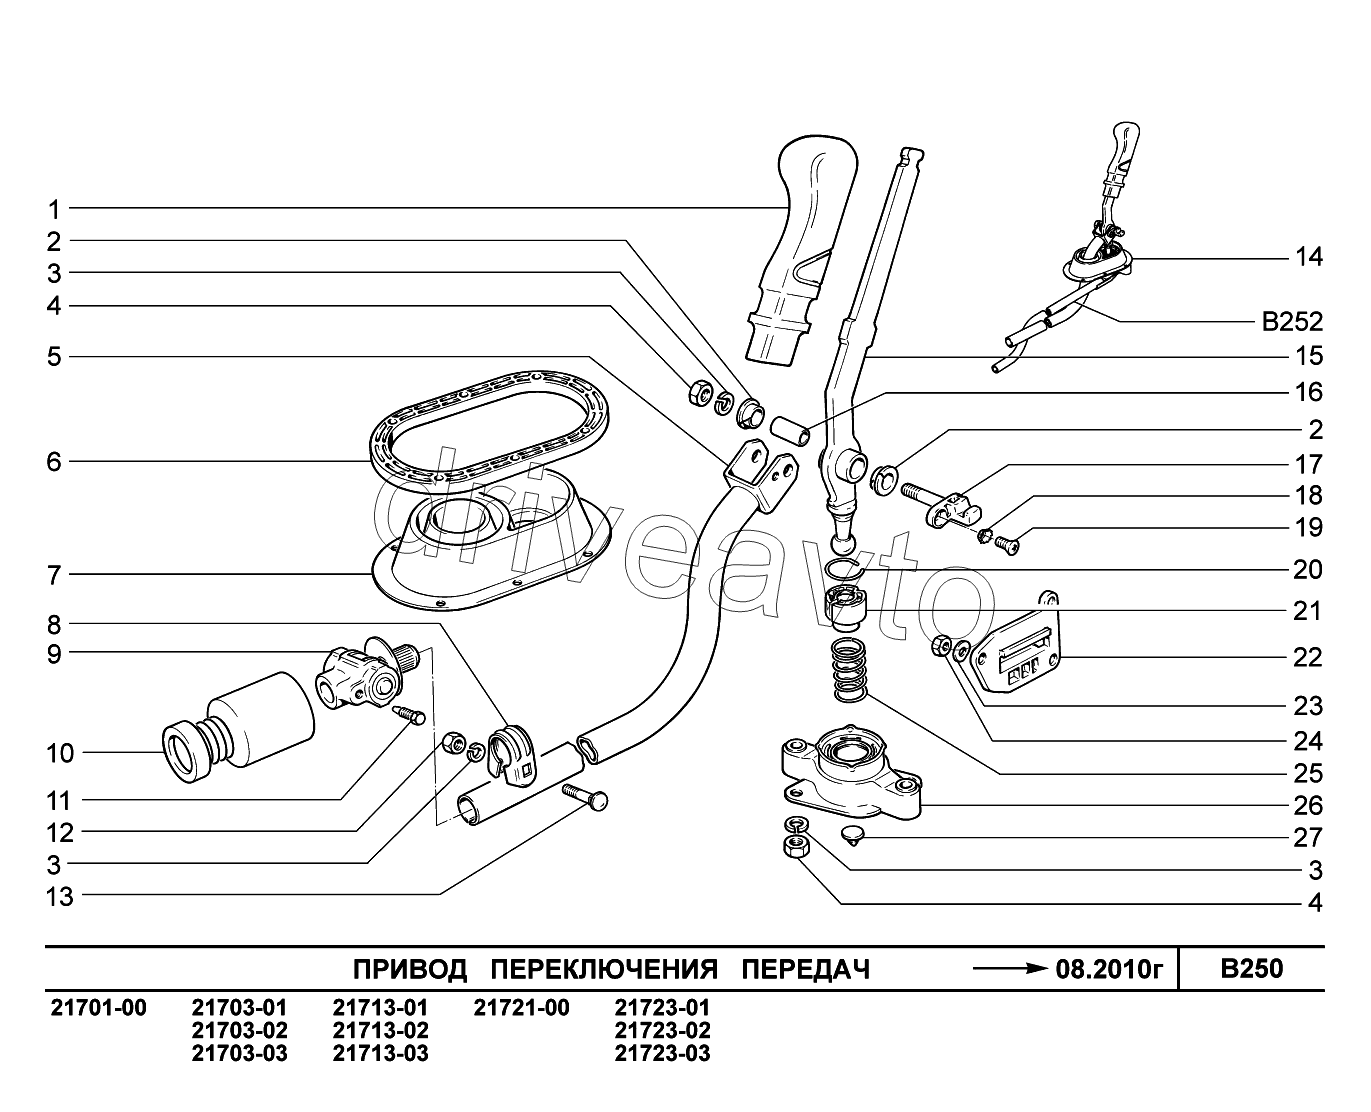 B250. Привод переключения передач до 08.2010